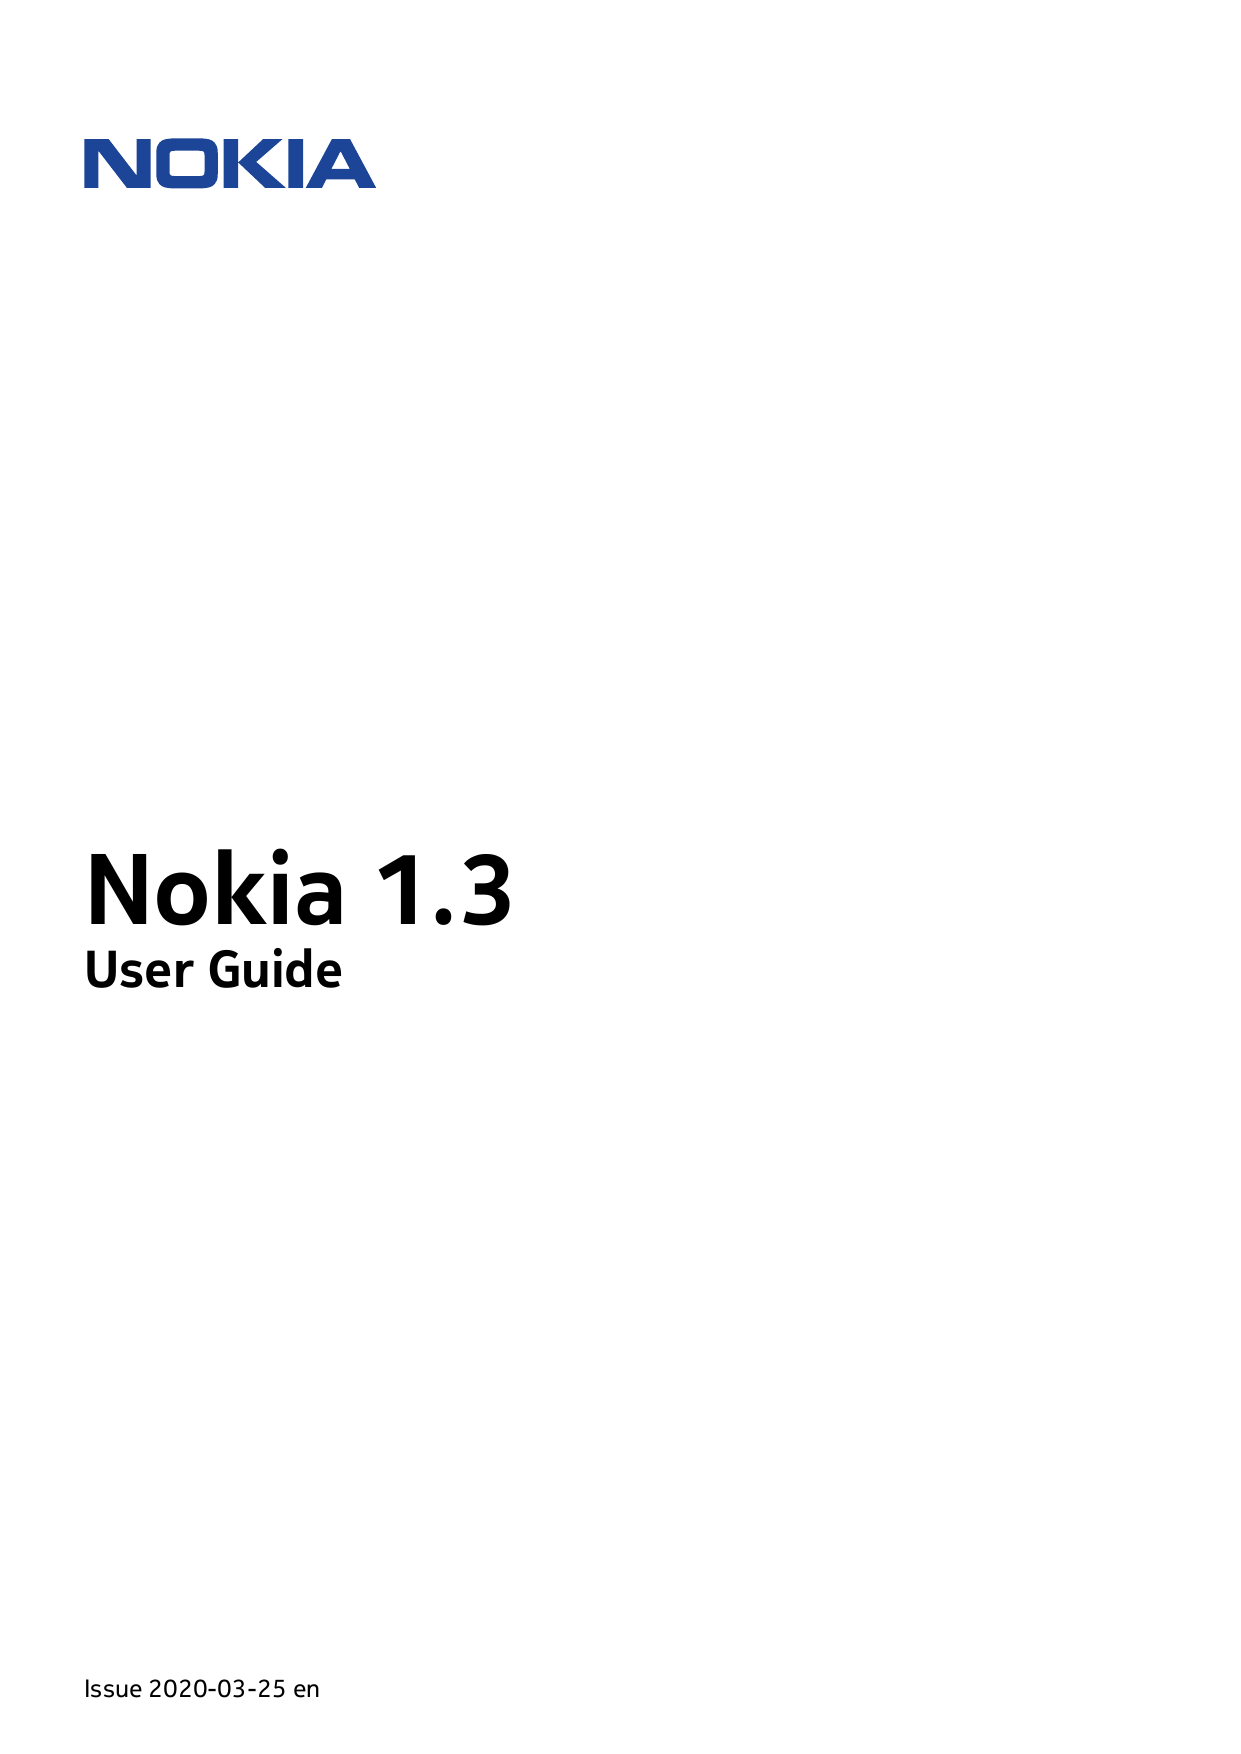 Nokia 1.3User GuideIssue 2020-03-25 en